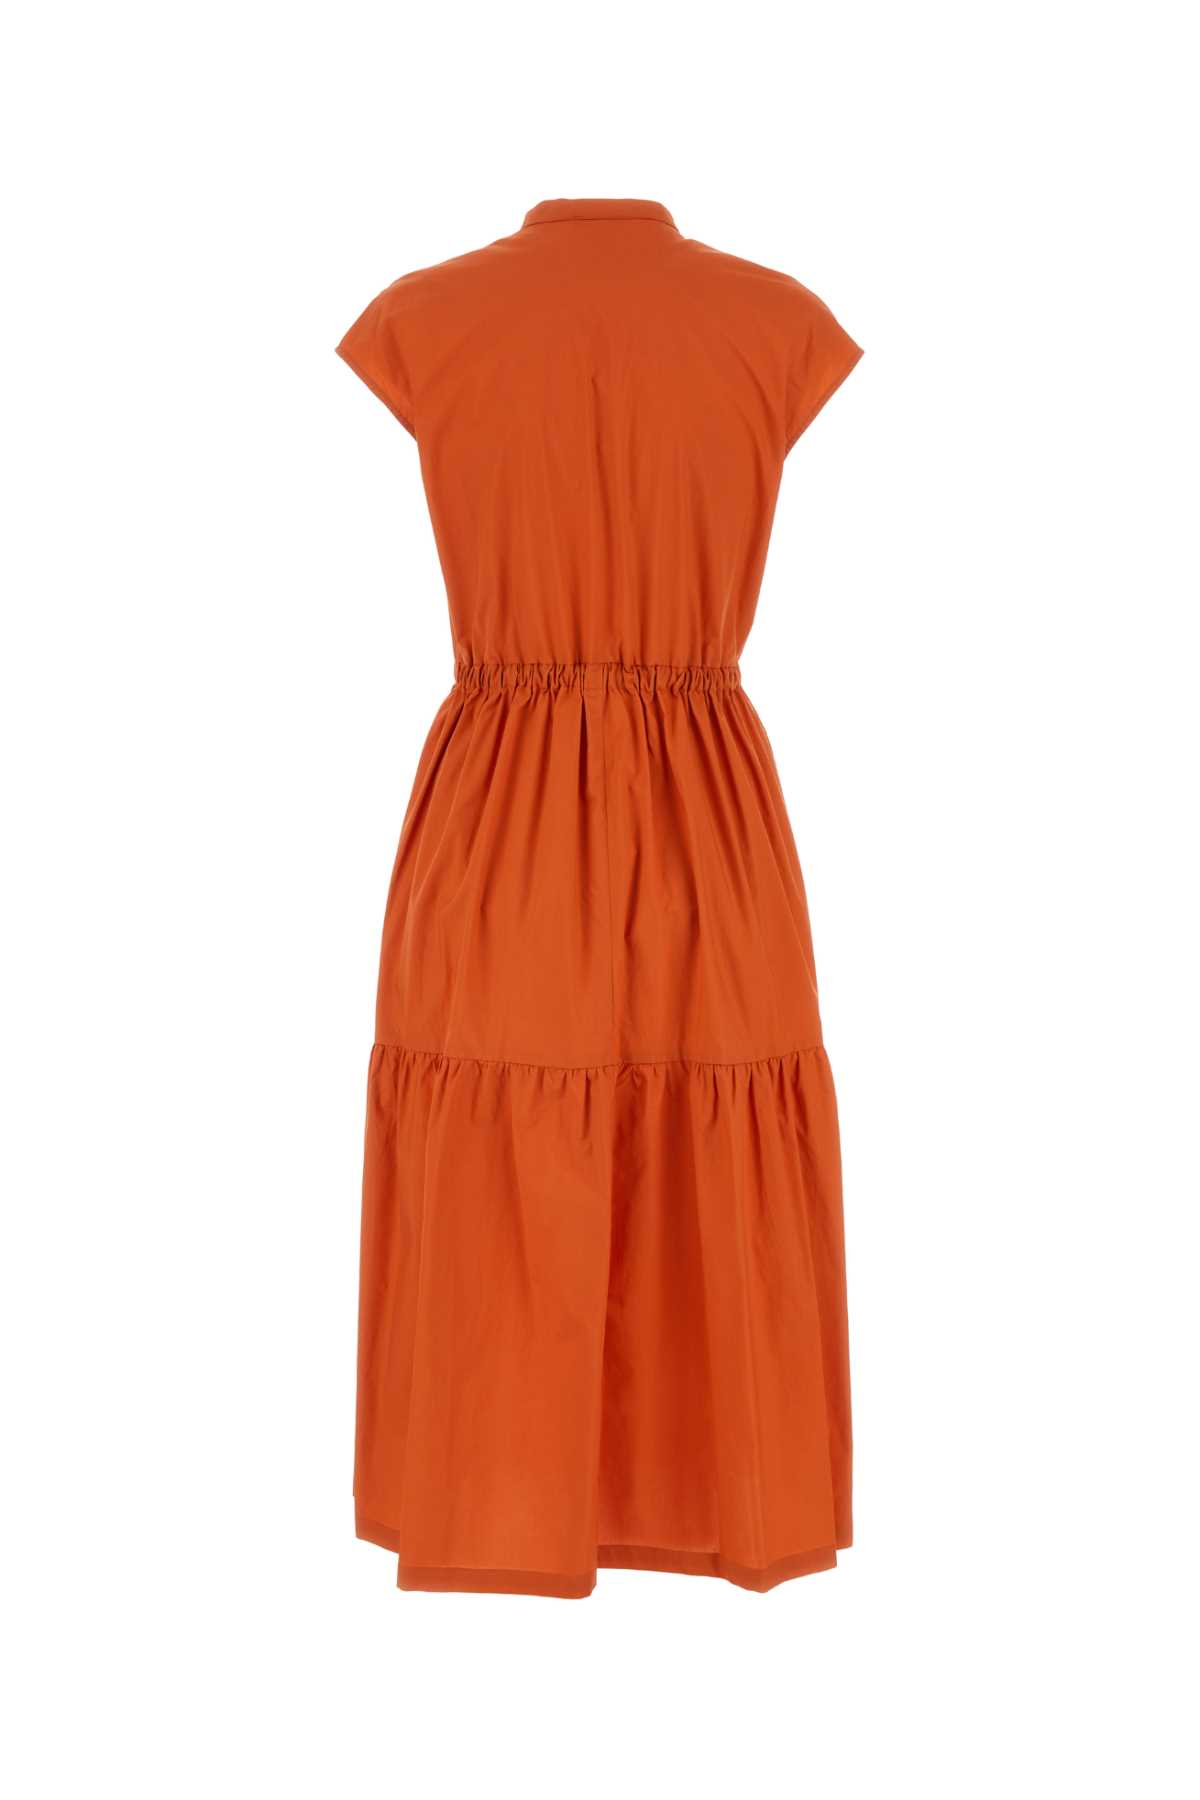 Woolrich Orange Cotton Dress In Koi